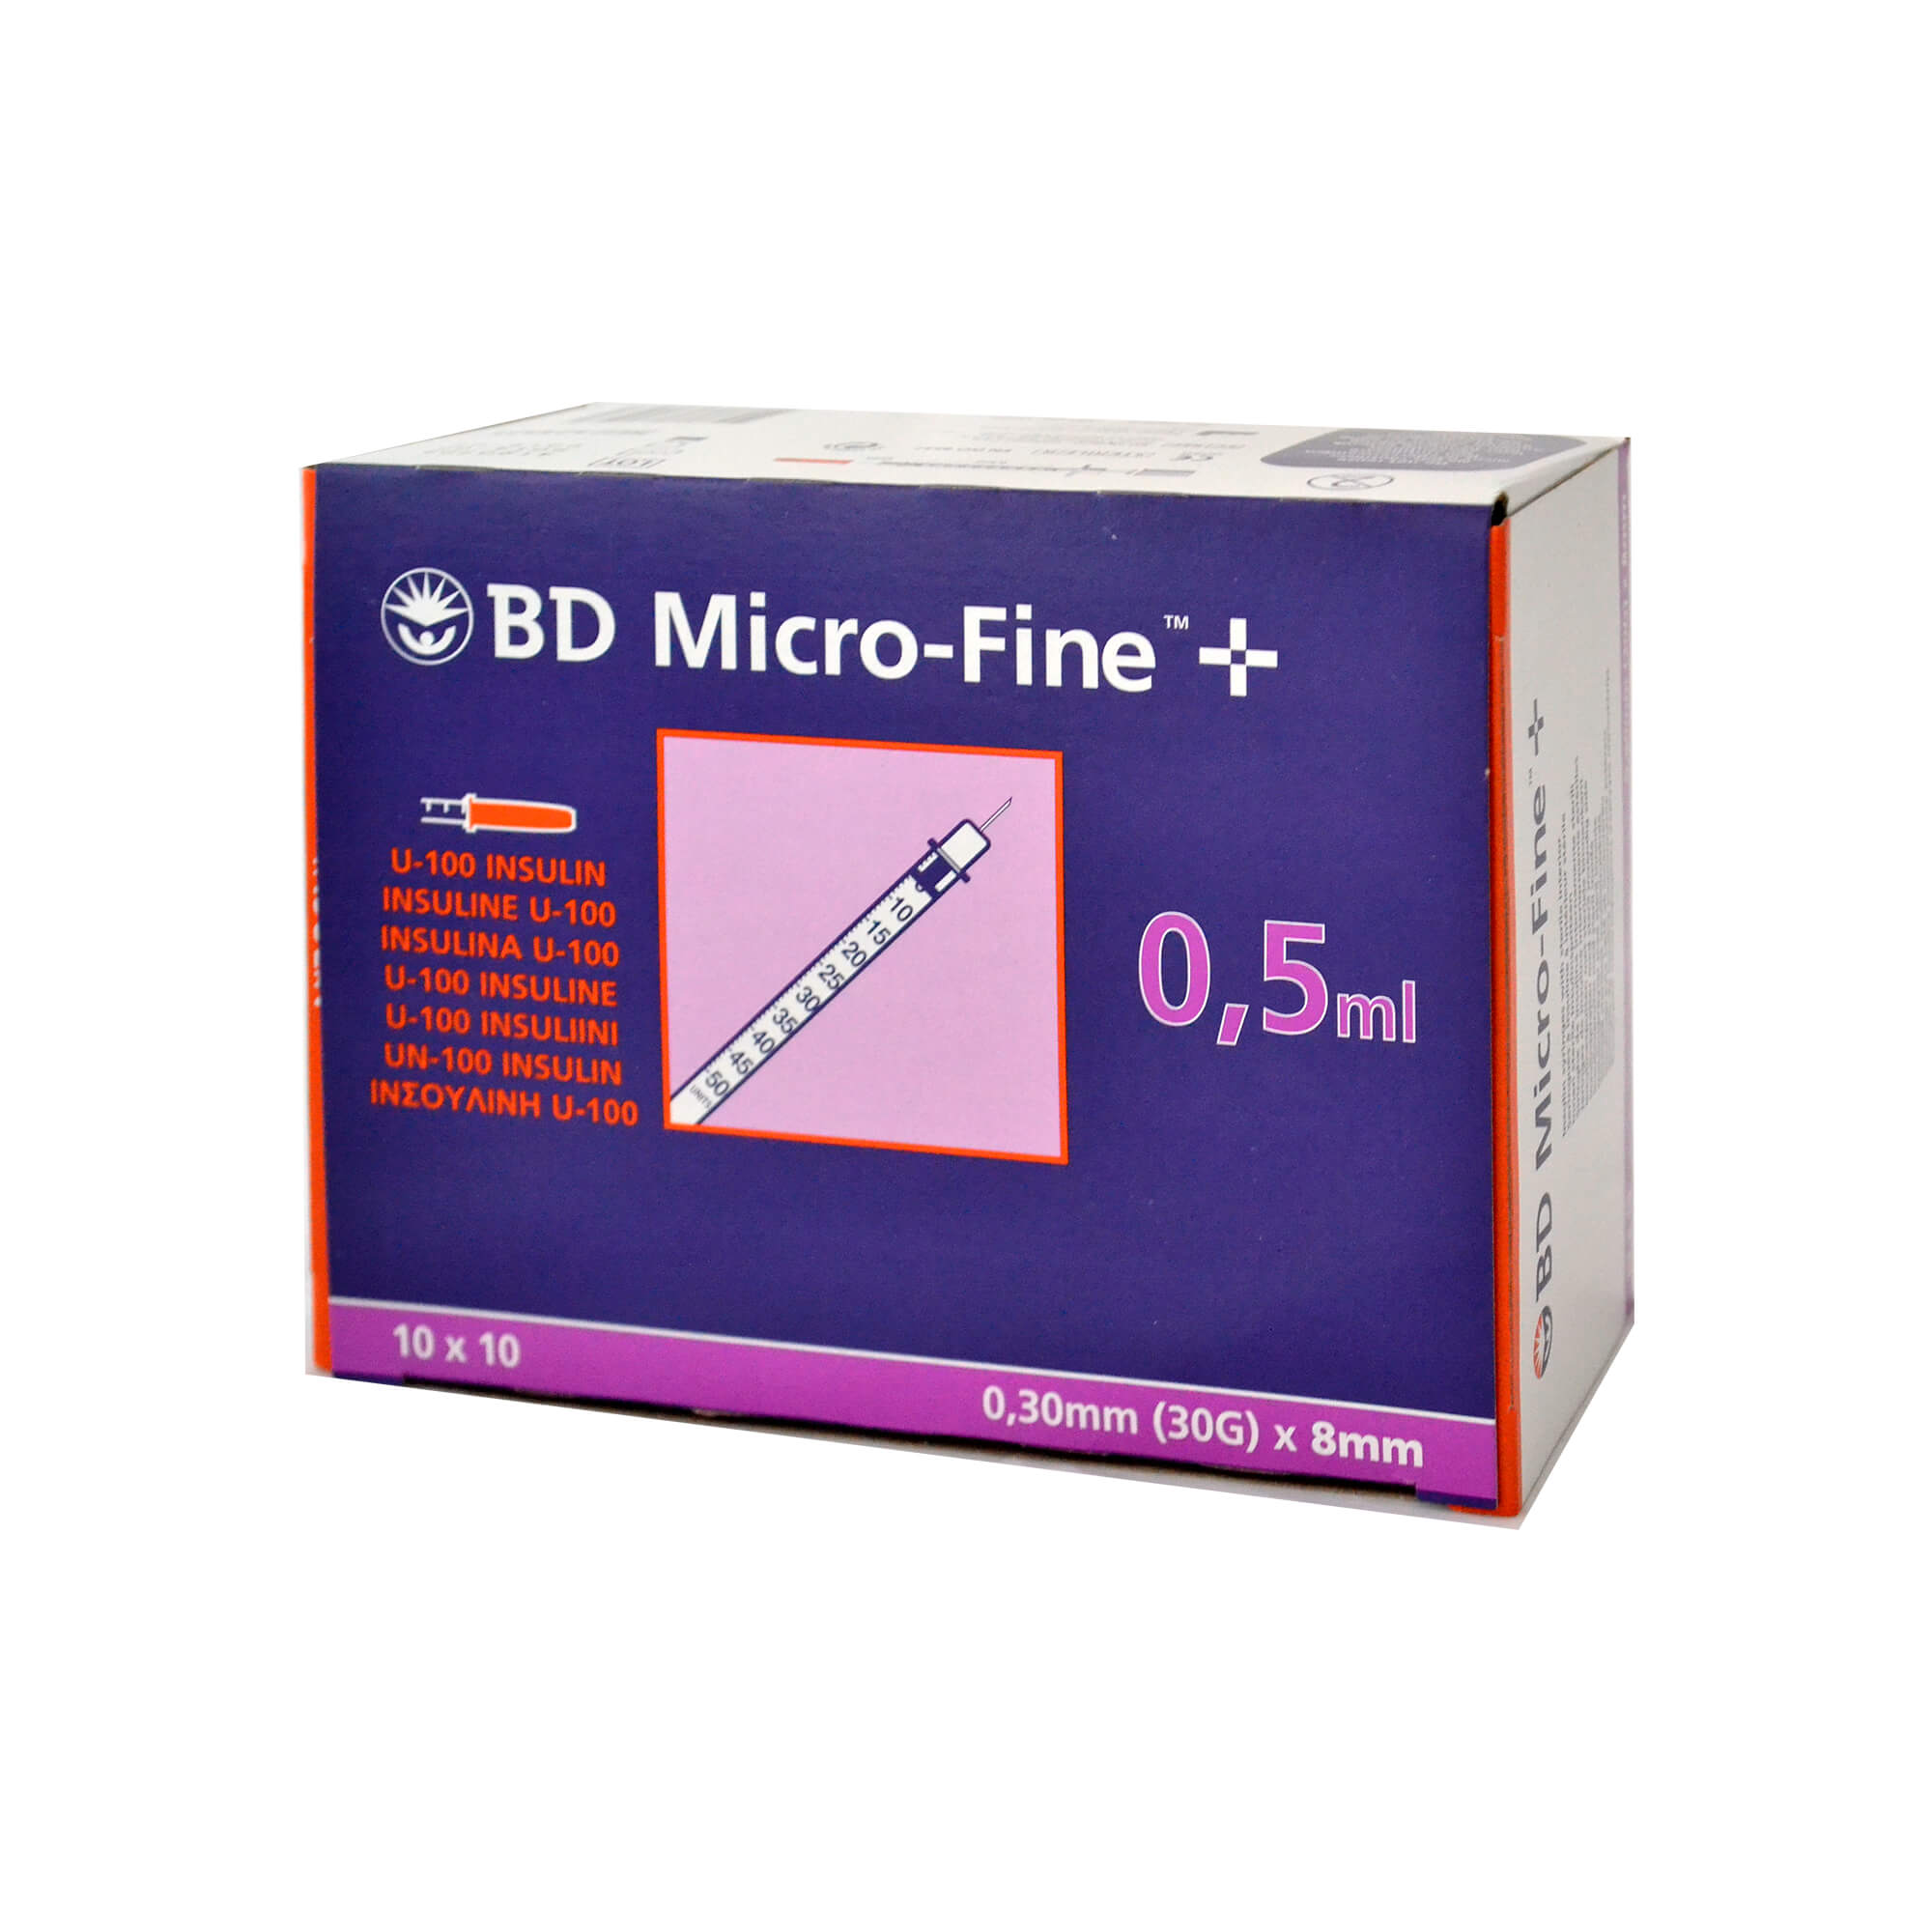 BD Micro-Fine+ Insulinspritzen 0,5 ml für U100-Insuline, Nadellänge: 8 mm, Nadelstärke: 0,30 mm.